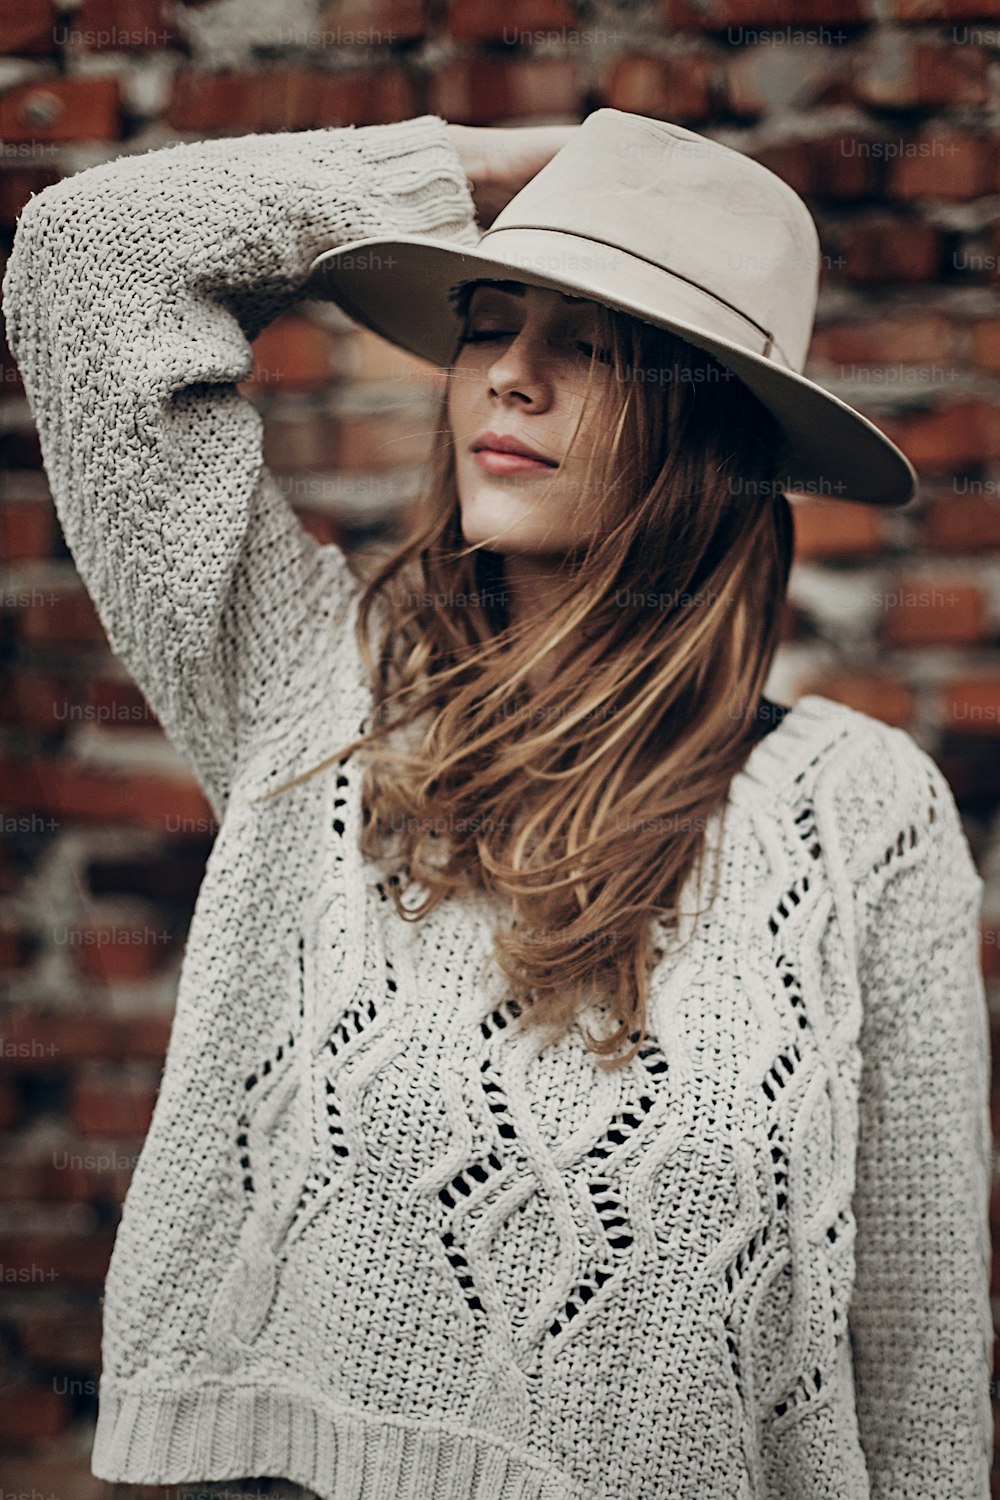 Stilvolle Hipster-Frau, die in einem Strickpullover auf dem Hintergrund einer Ziegelmauer posiert und einen Hut hält. atmosphärischer sinnlicher Moment. Boho Country modischer Look. Freie Menschen